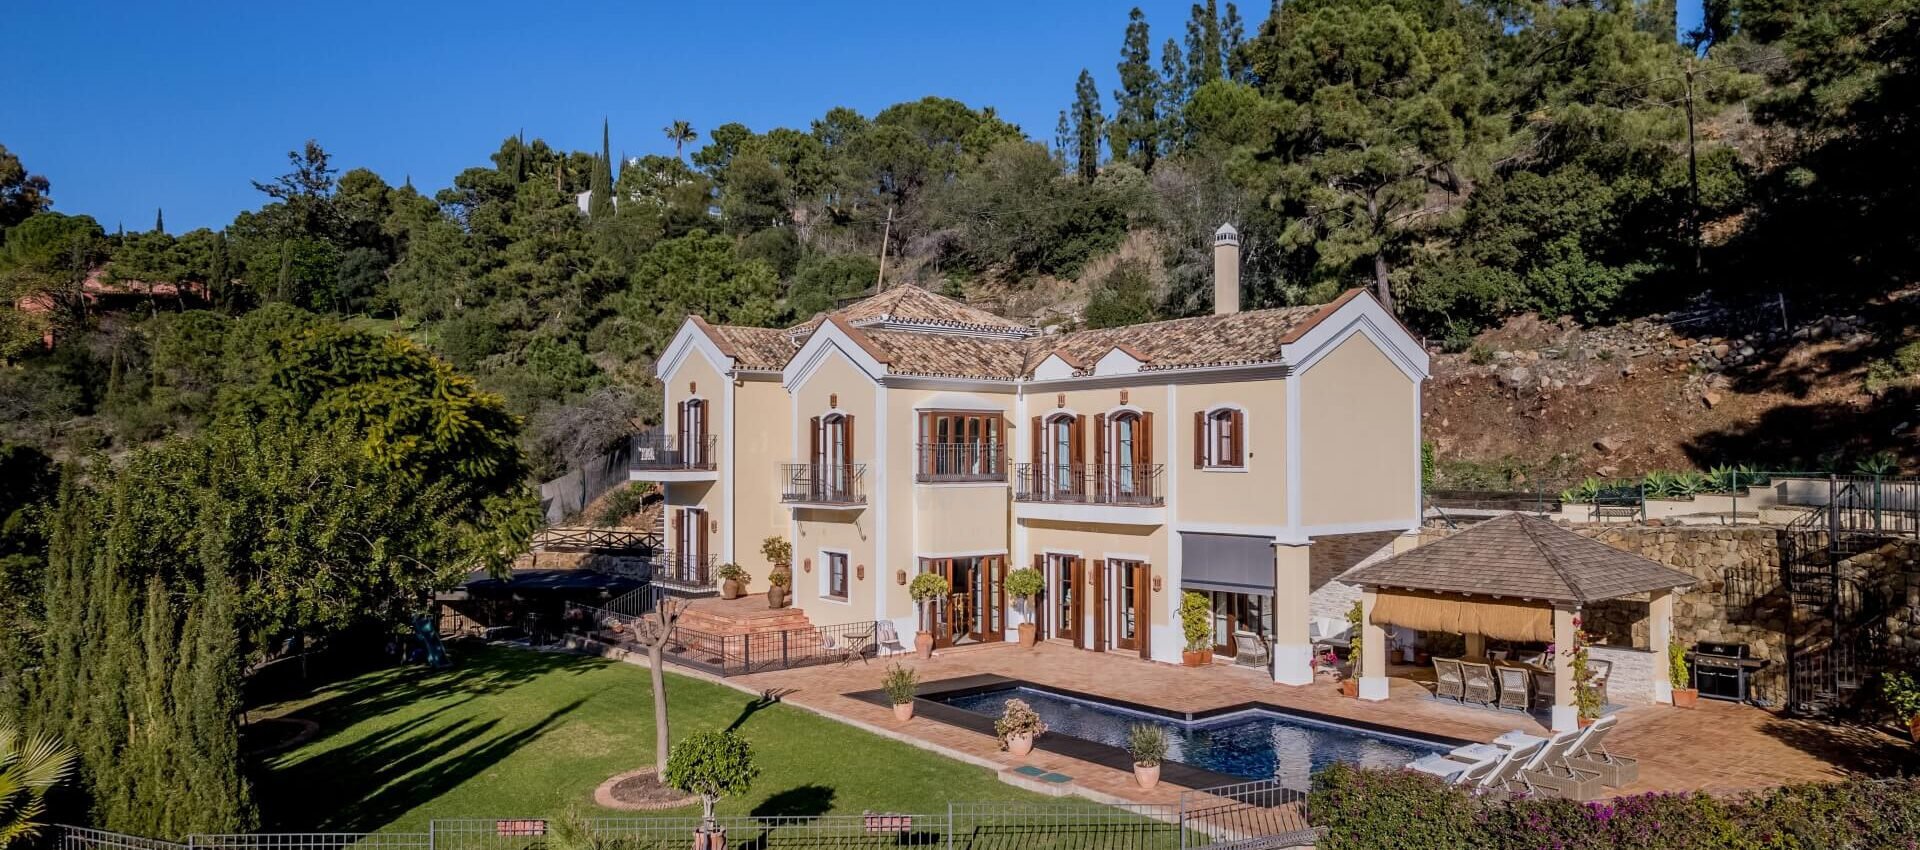 Residencia familiar de estilo mediterraneo en El Madroñal